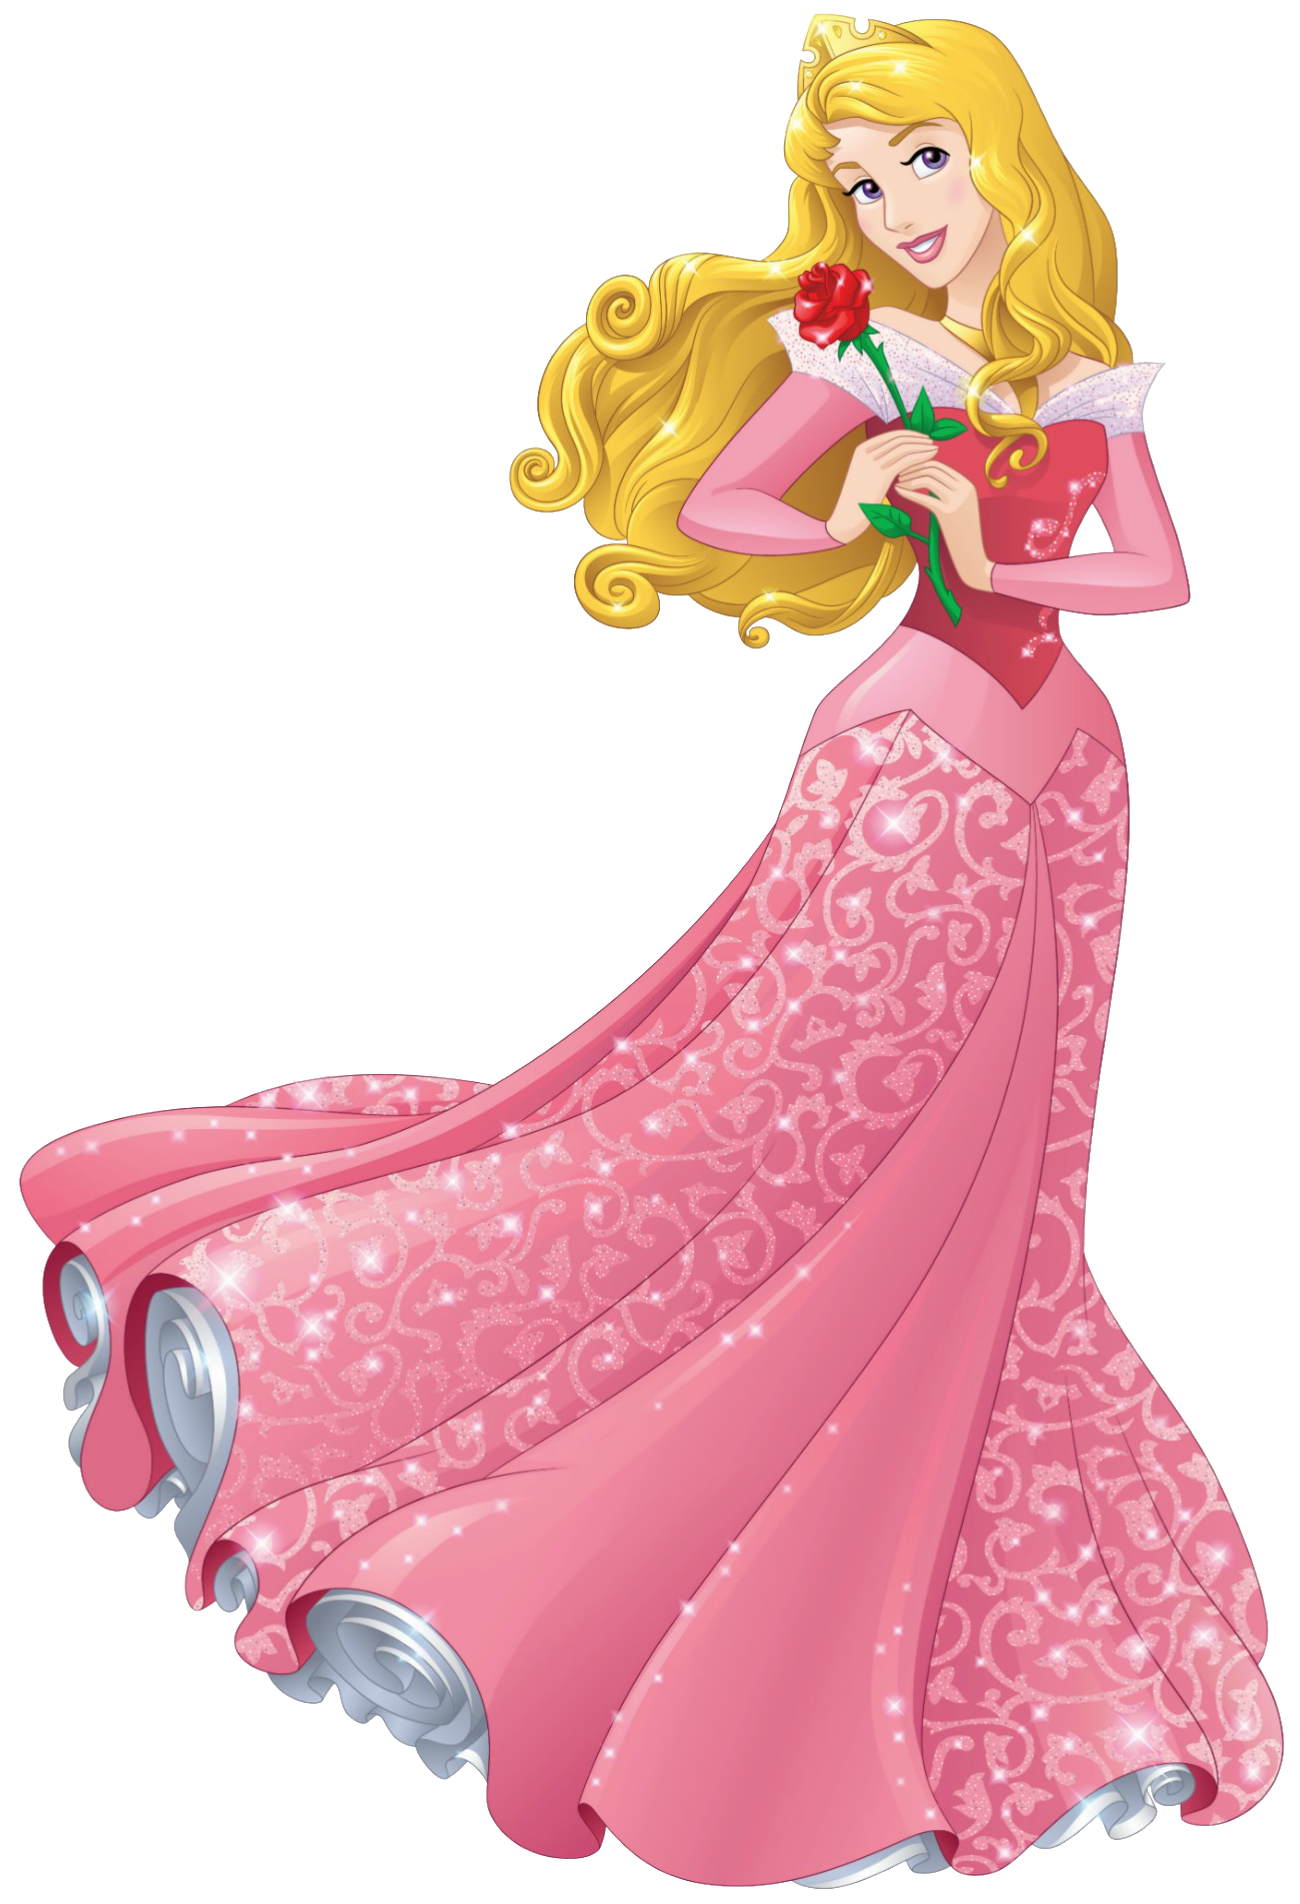 Princess/Princesa - Wikipedia